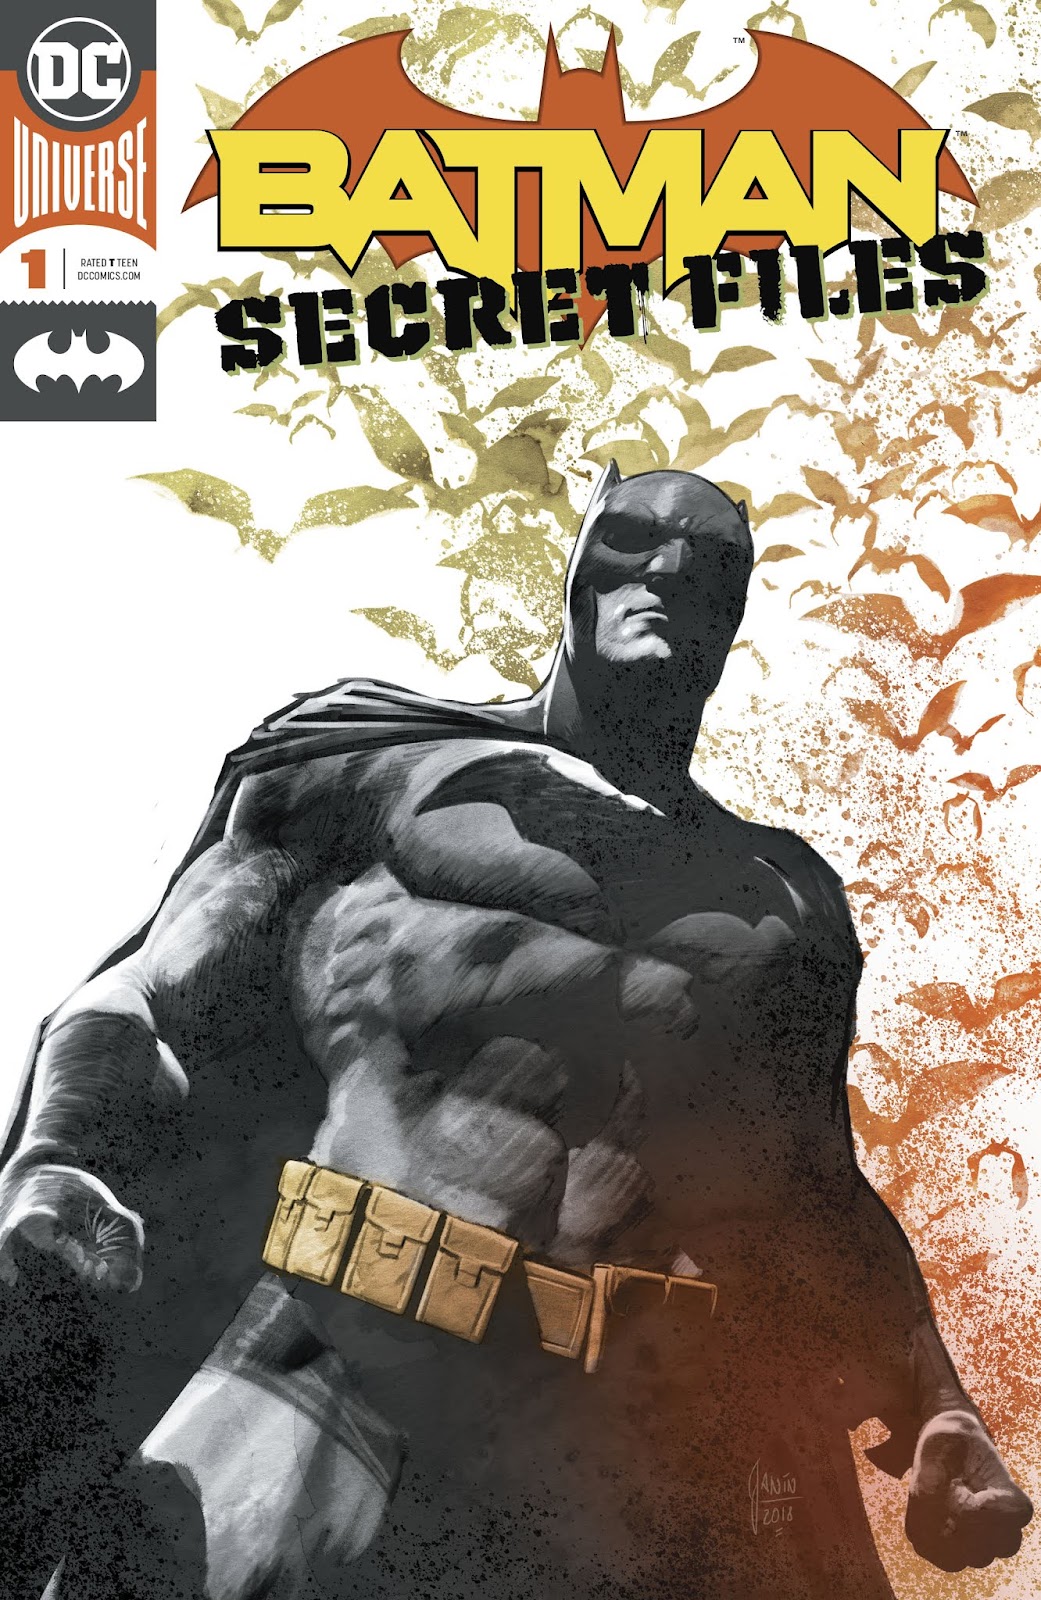 Batman Secret Files (2018) issue 1 - Page 1